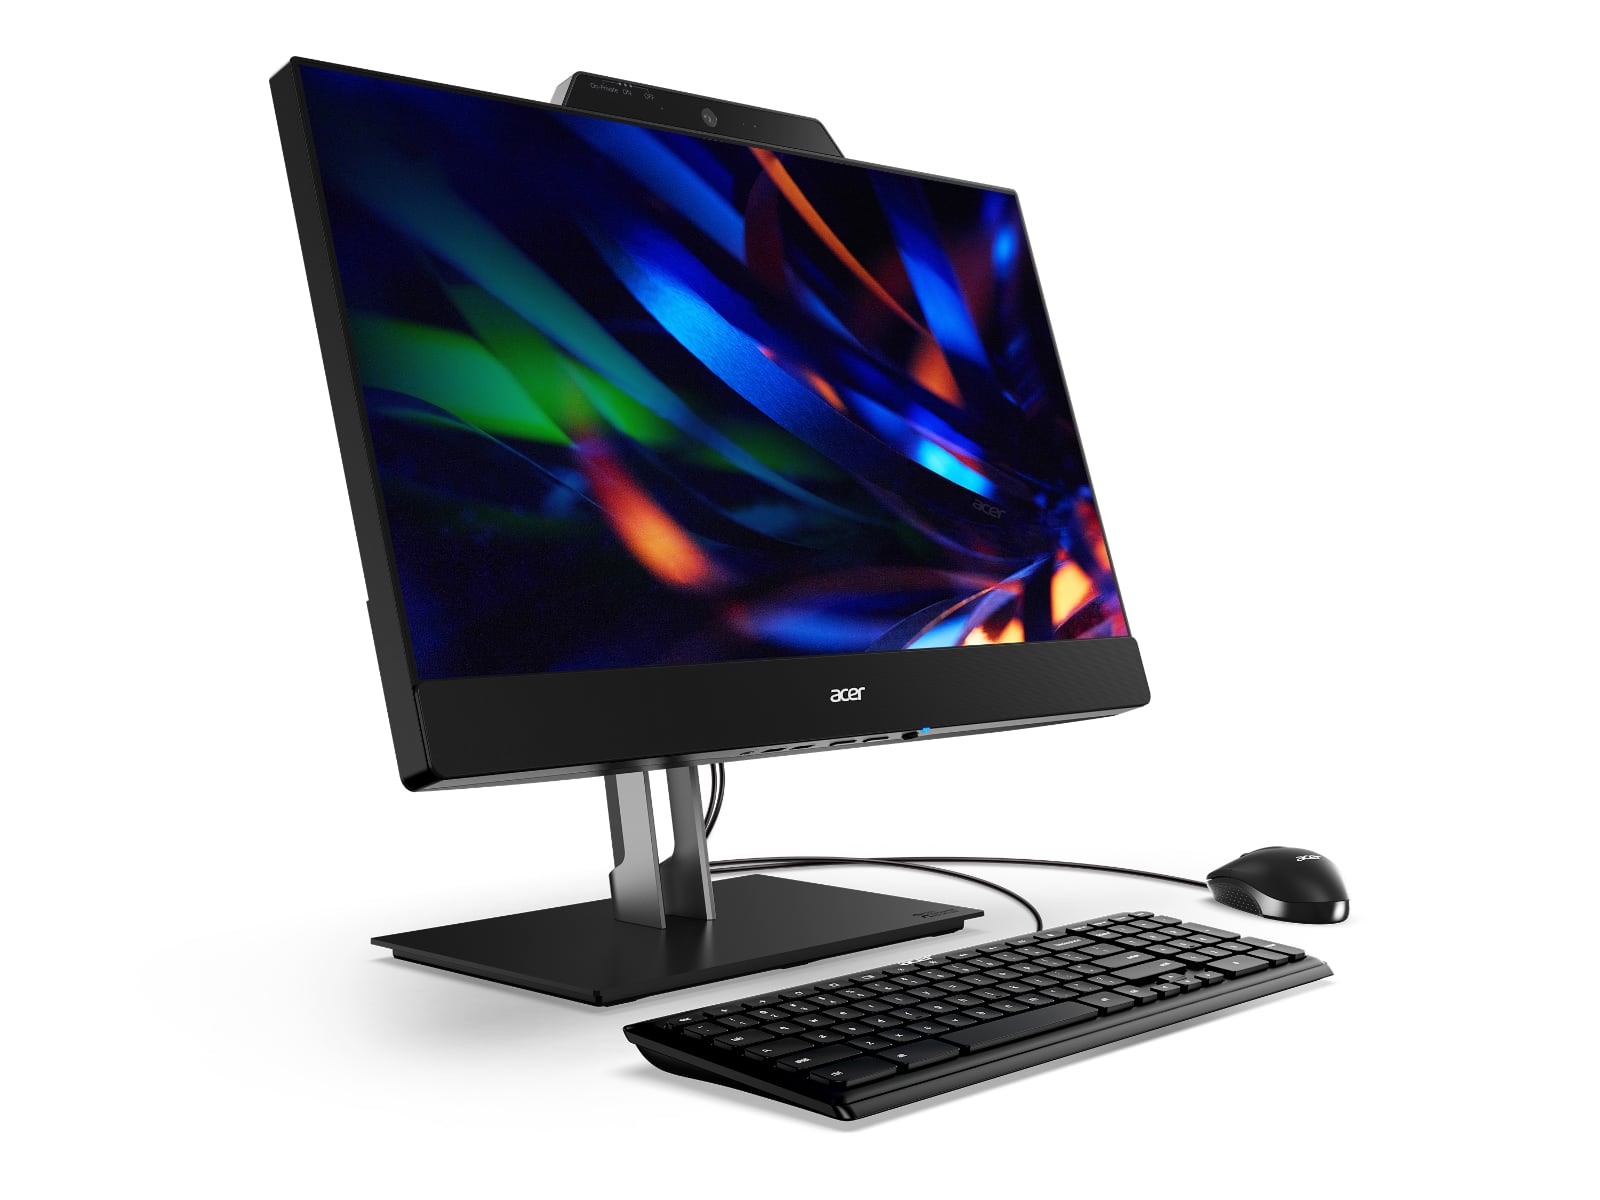 Acer dodaje 24-calowy monitor FHD 1080p do wszystkich nowych urządzeń Chromebox CXI5 i stworzył rozwiązanie Add-In-One 24 za 610 dolarów-2